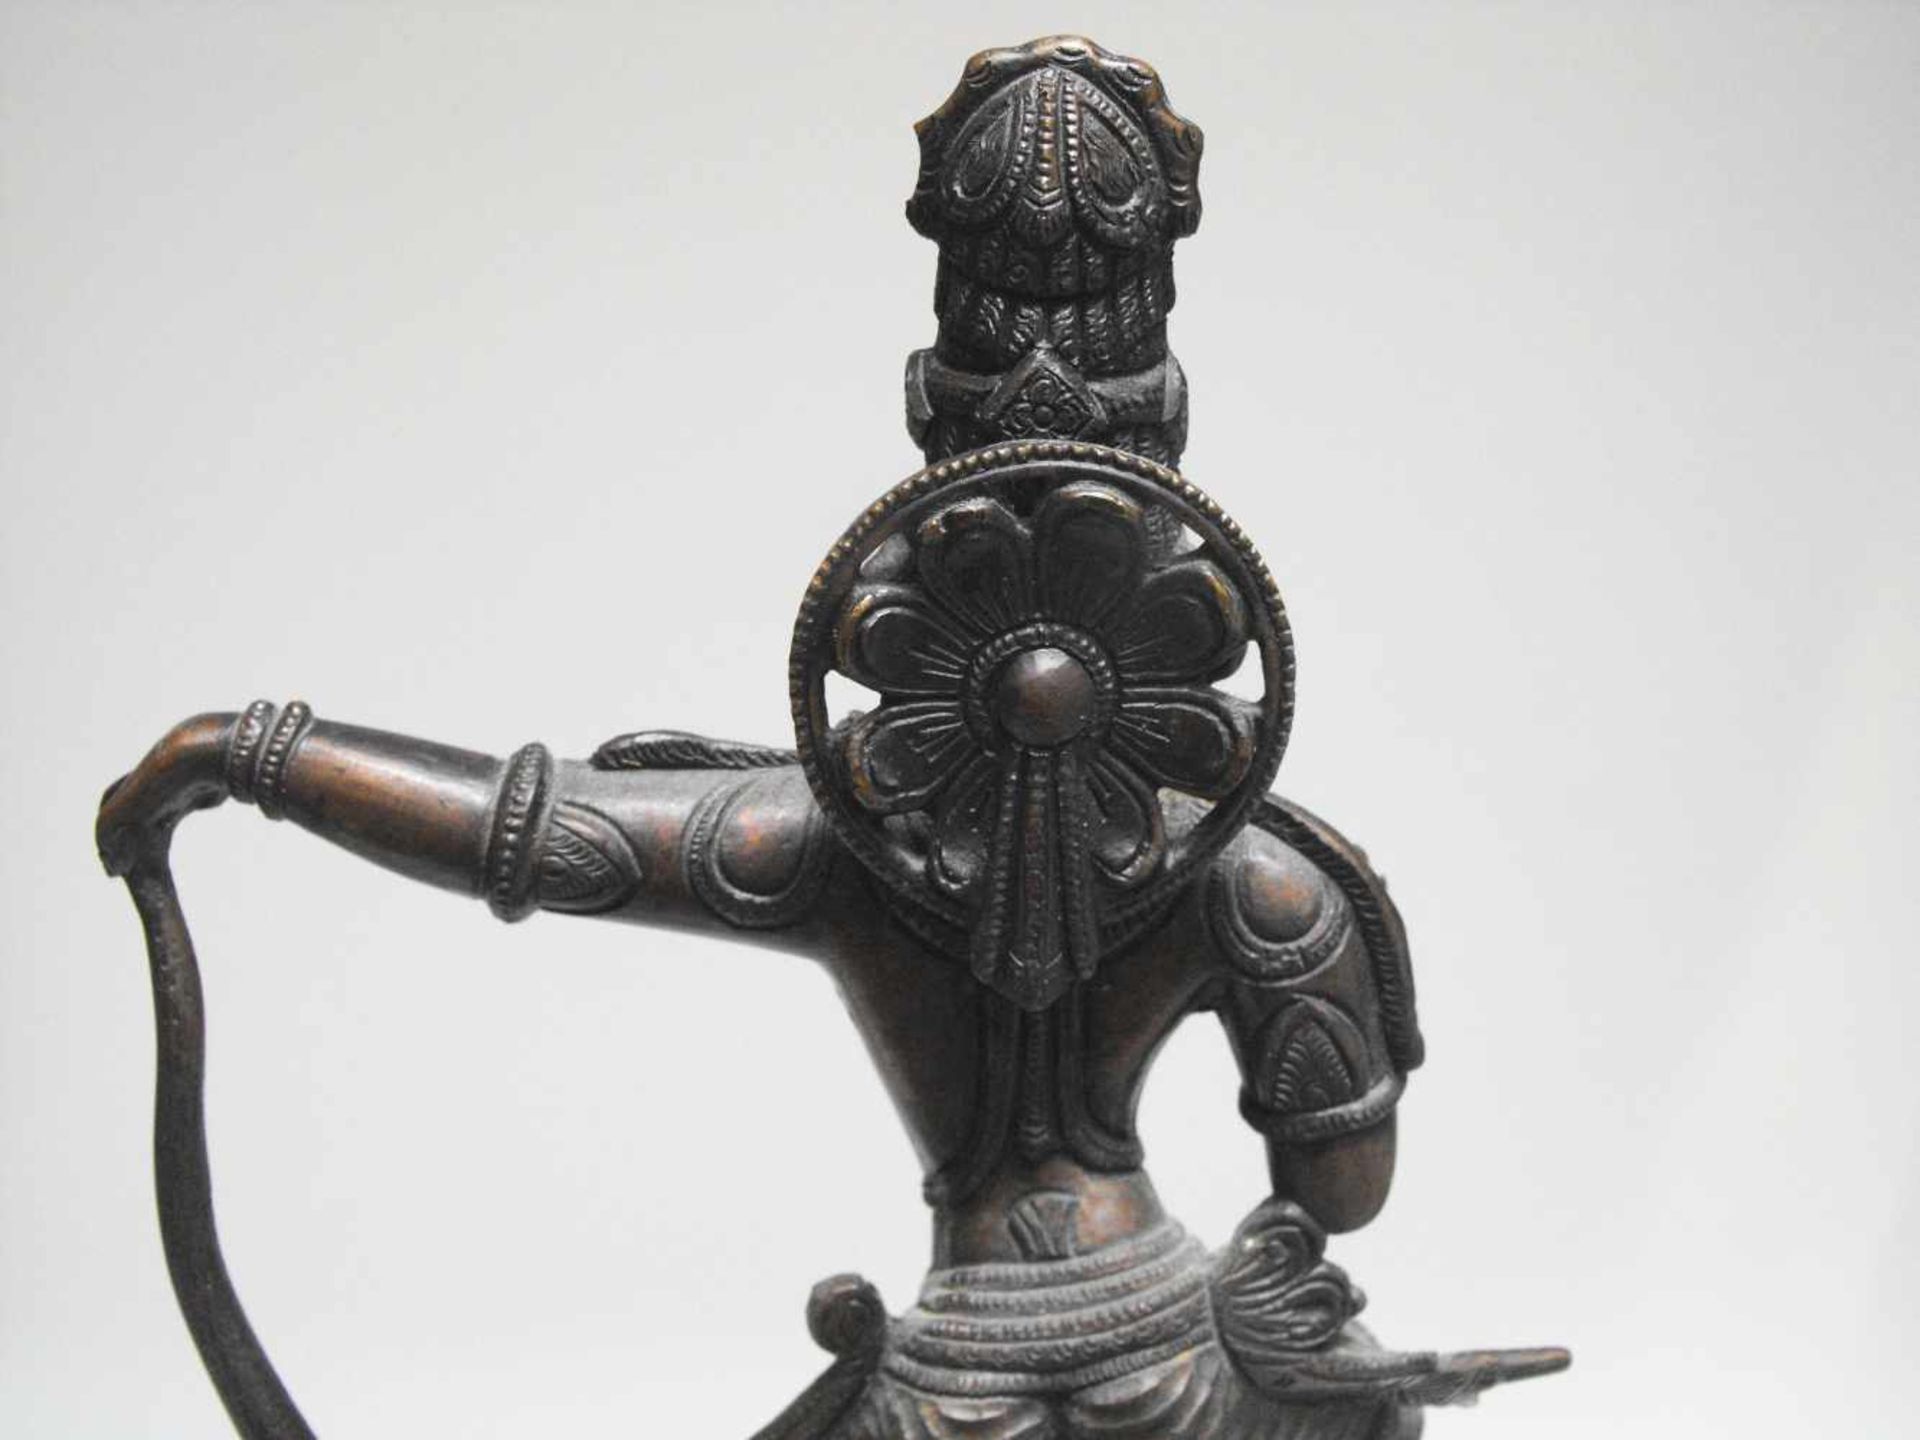 Hindu Gott Shiva stehend auf Schlange - Image 5 of 6